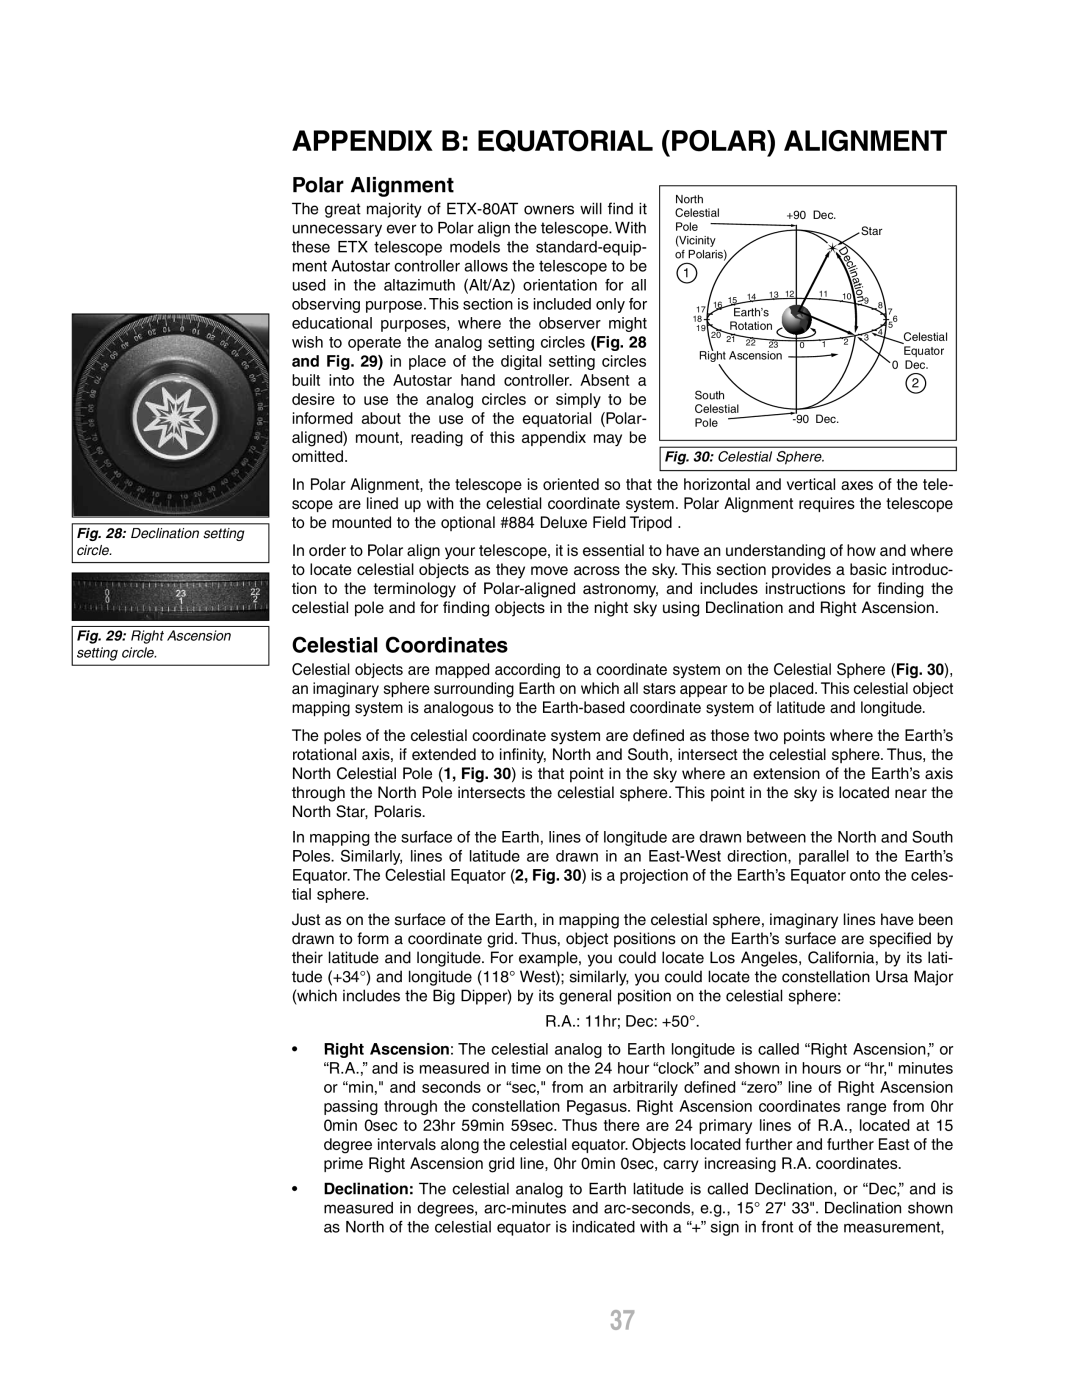 Meade ETX-80AT-TC instruction manual Appendix B Equatorial Polar Alignment, Celestial Coordinates 